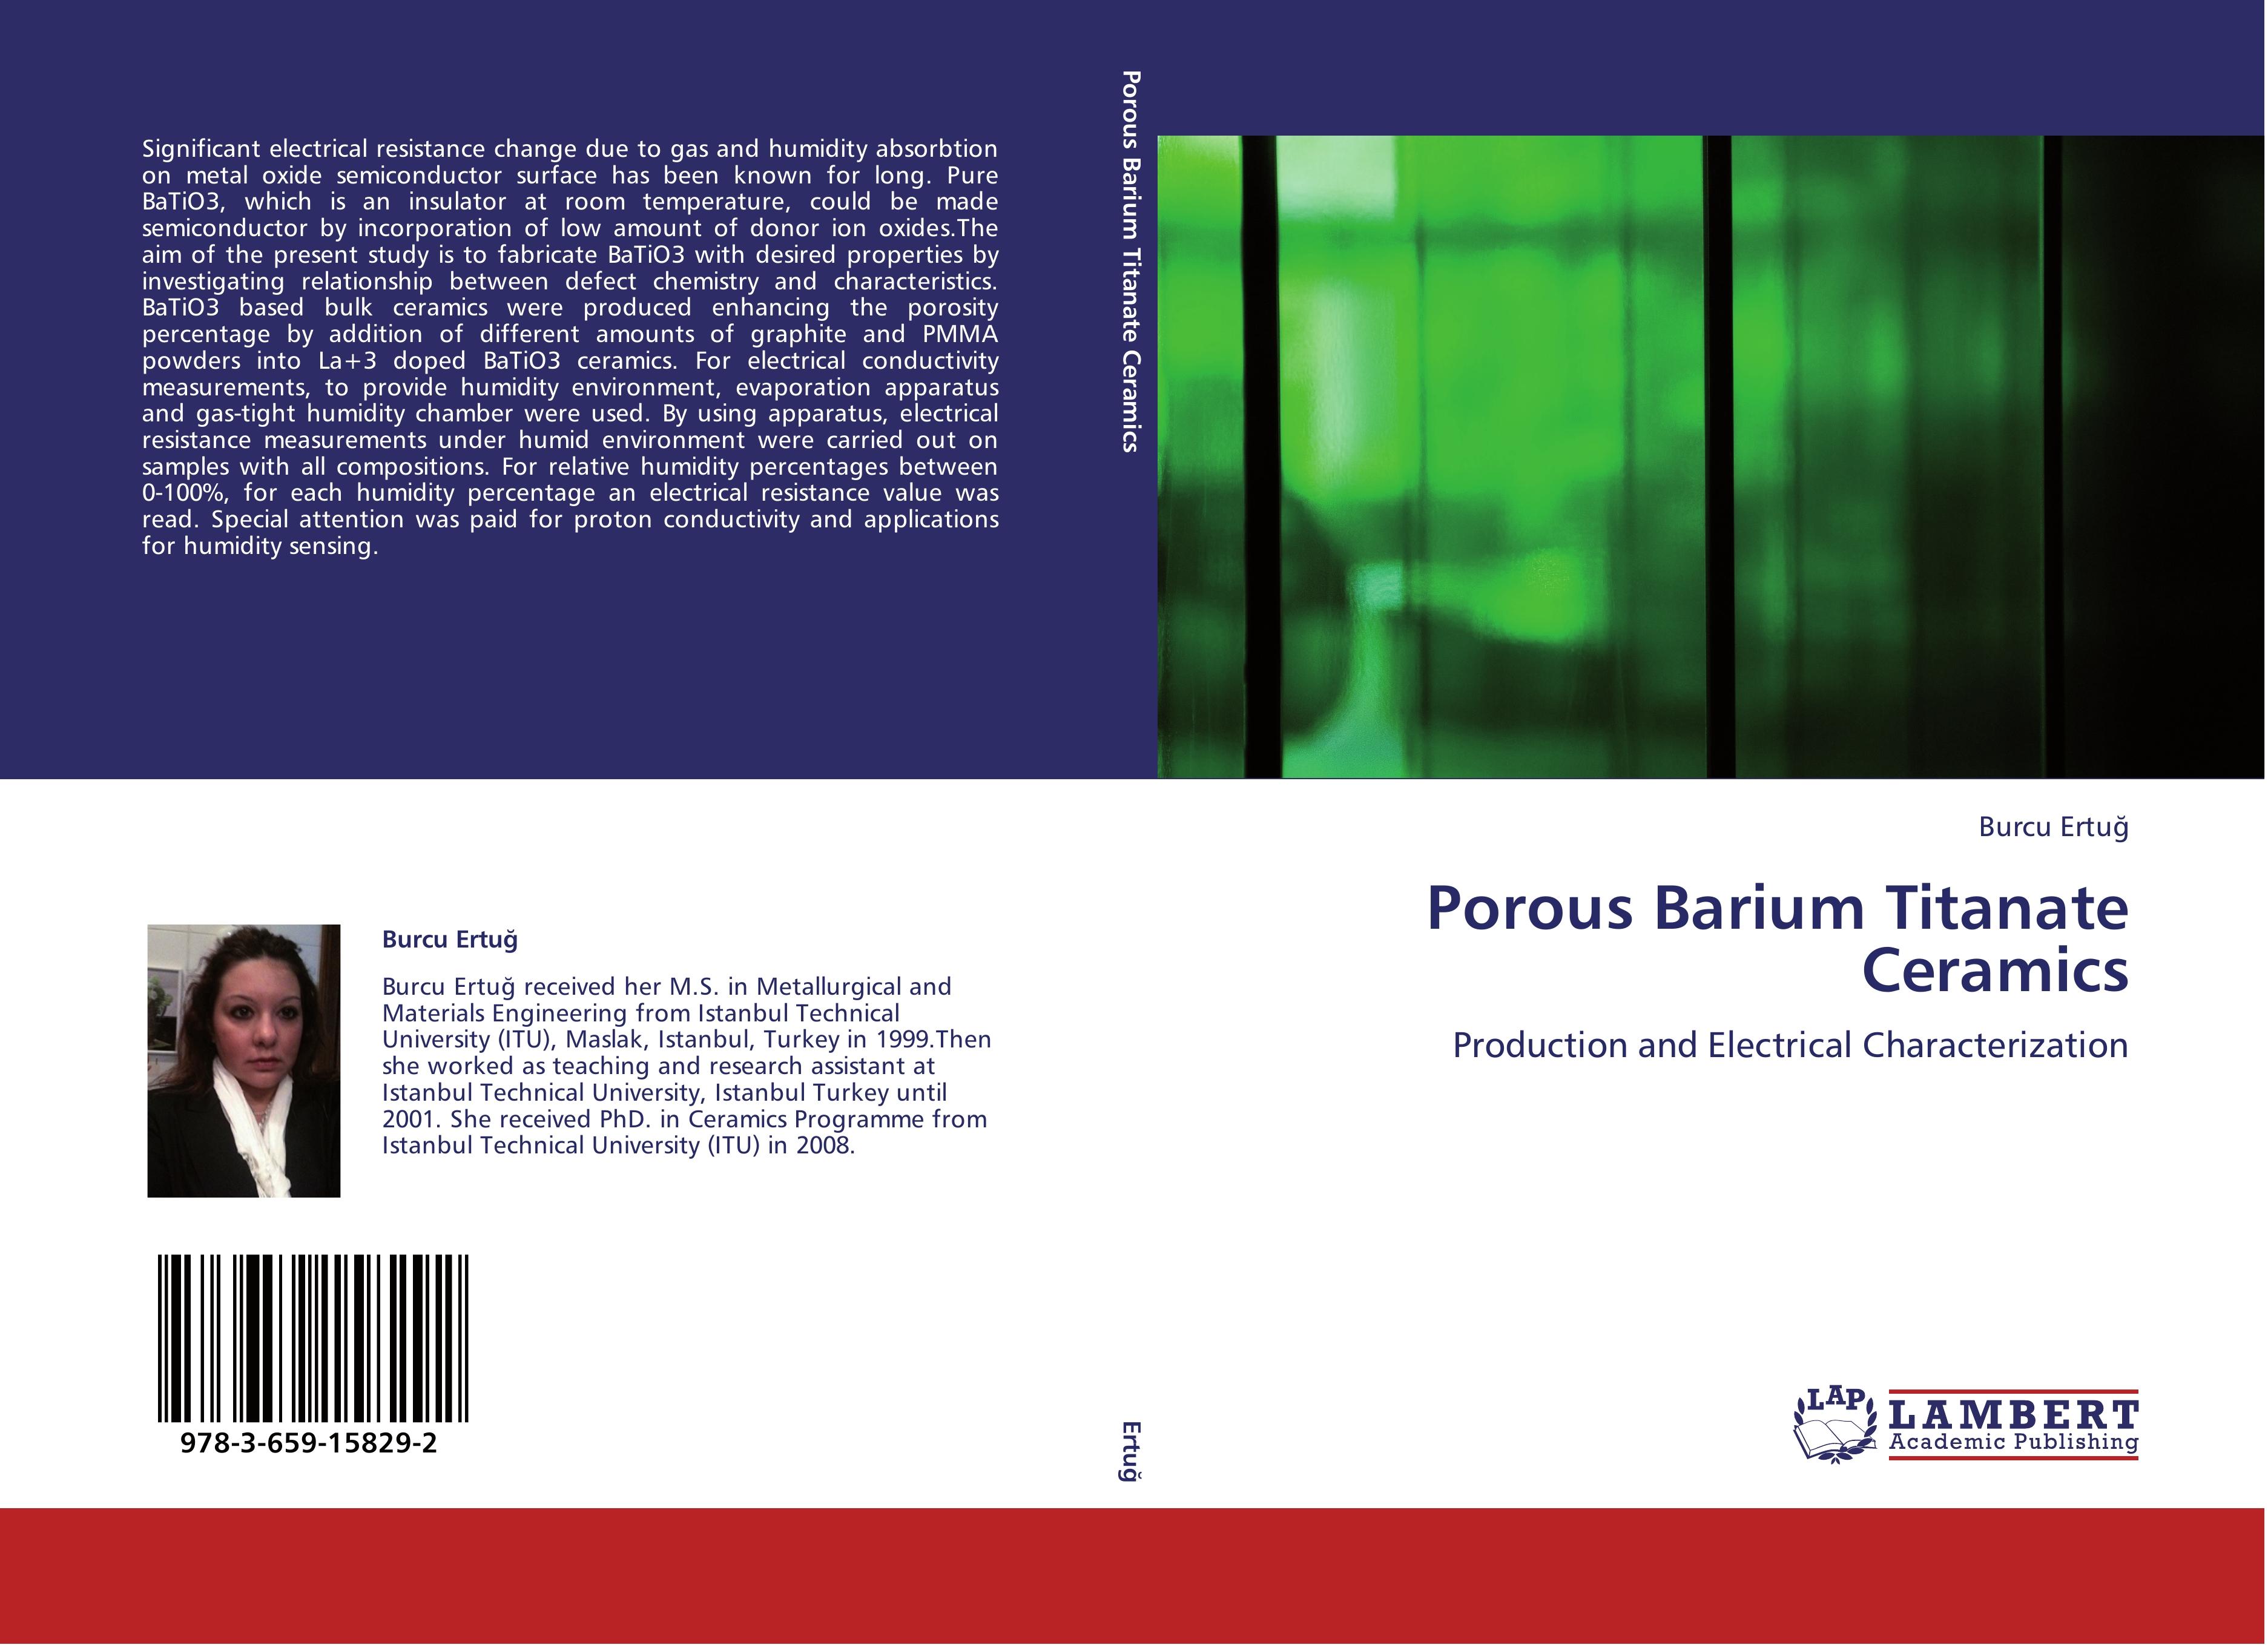 Porous Barium Titanate Ceramics